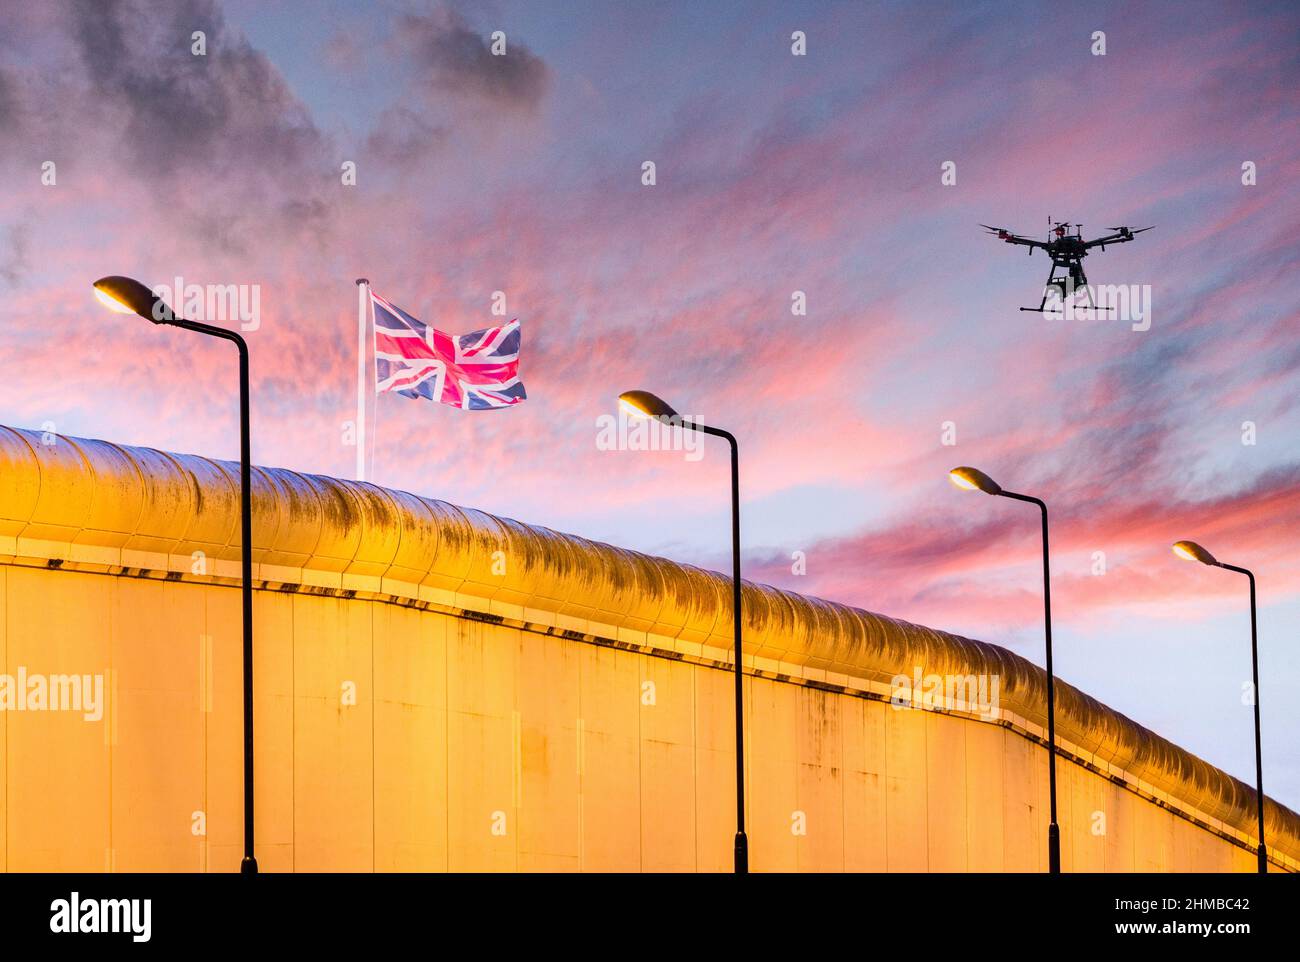 Bandera de Jack de la Unión del Reino Unido en la prisión/muro fronterizo con aviones teledirigidos en el cielo: Inmigración, control de fronteras, Brexit, servicio de prisiones... concepto Foto de stock